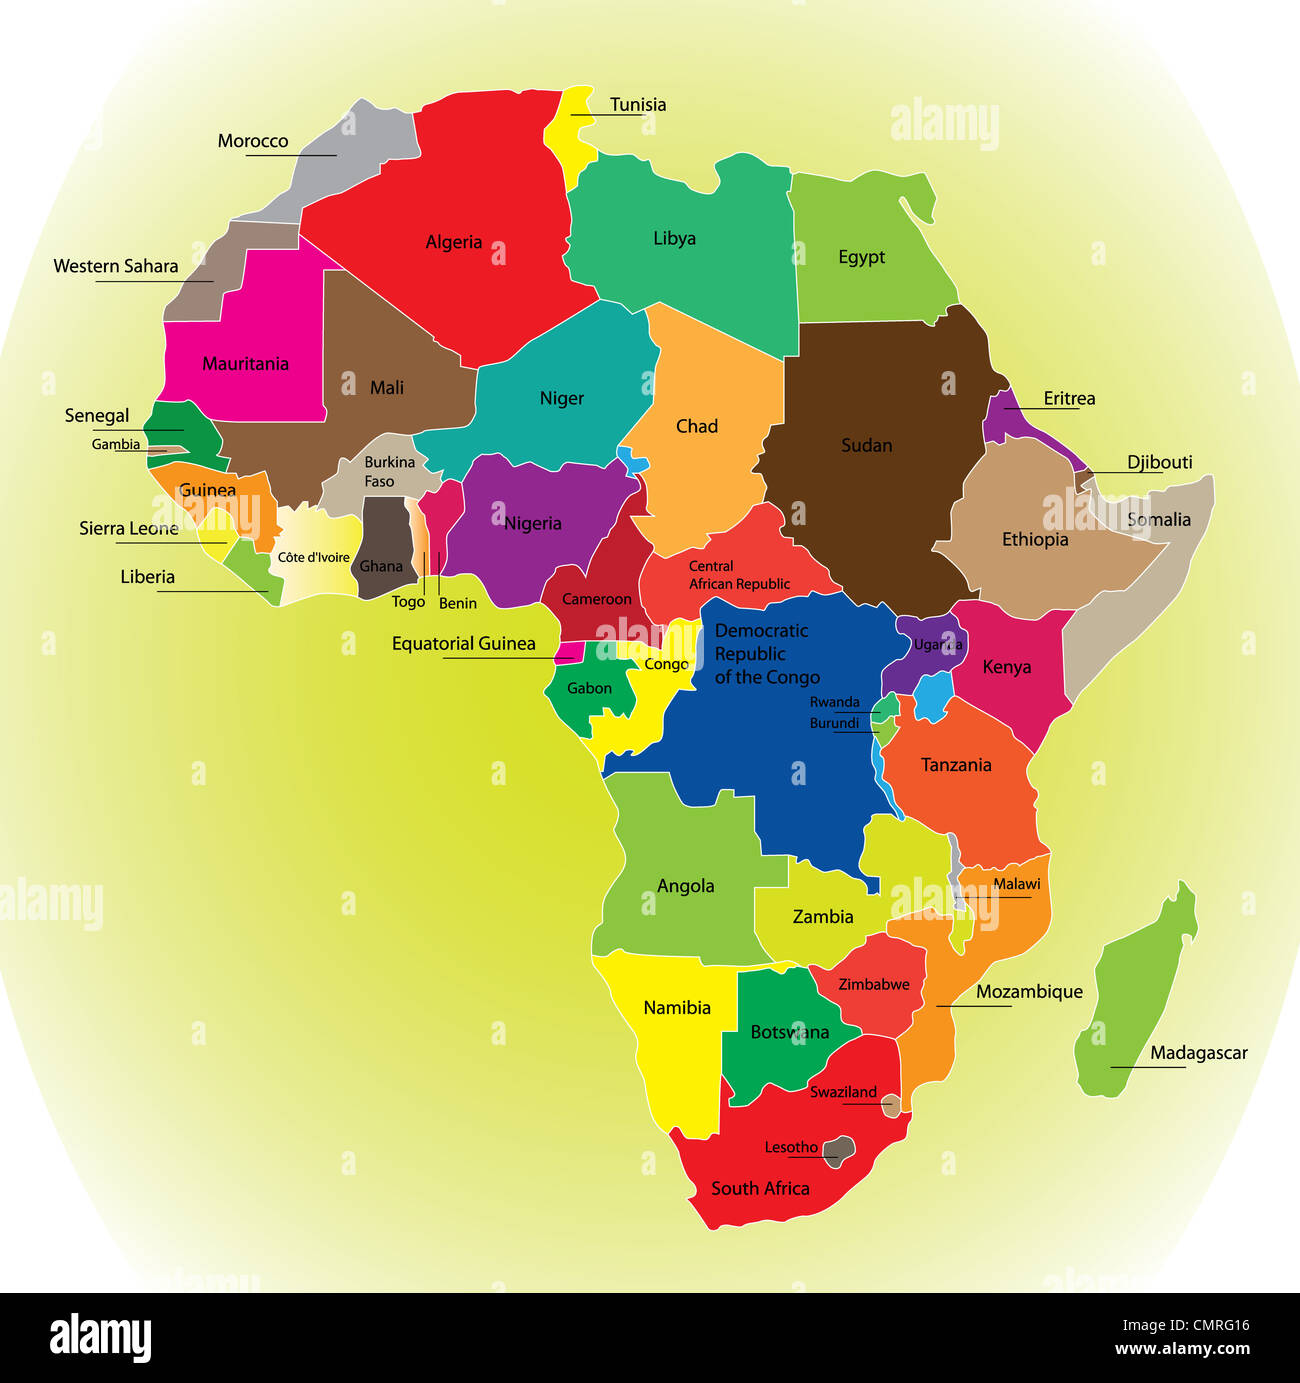 Dettaglio mappa a colori del continente africano con le frontiere. Ogni membro è colorata di vari colori e ha scritto il nome. Foto Stock